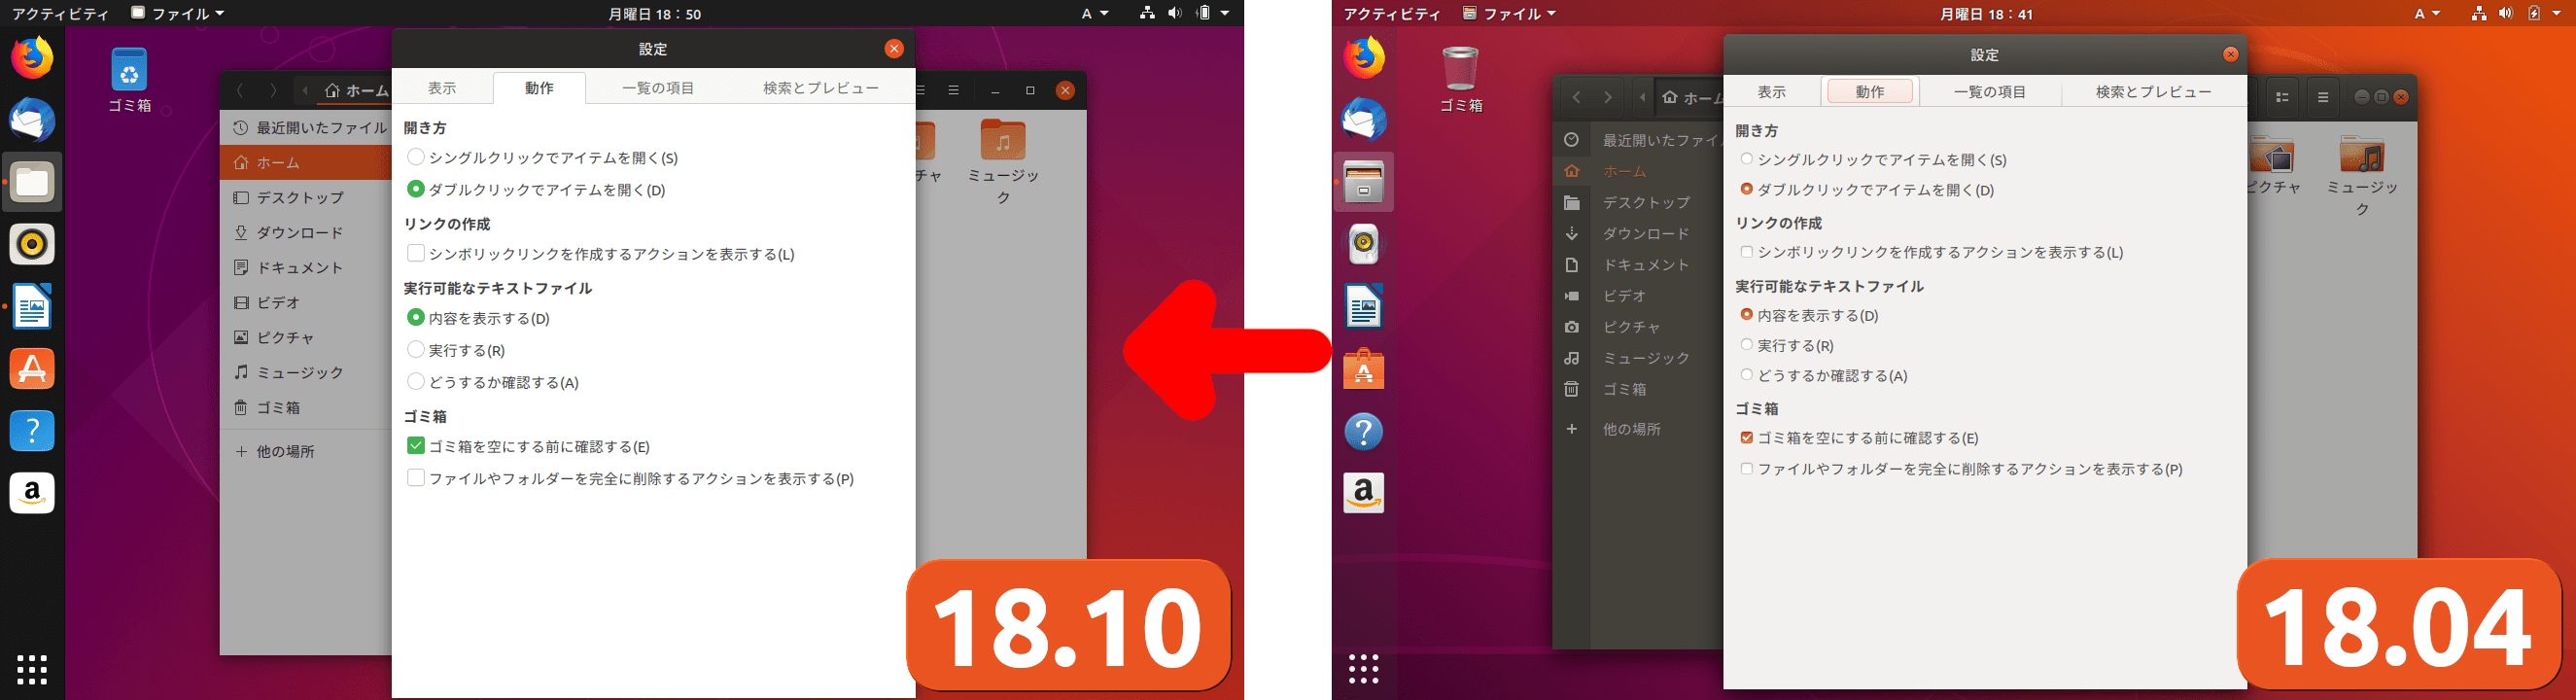 Ubuntu 18 10でデスクトップはどう変わった 18 04との比較 新機能 変更点まとめ 比較画像つき Lfi